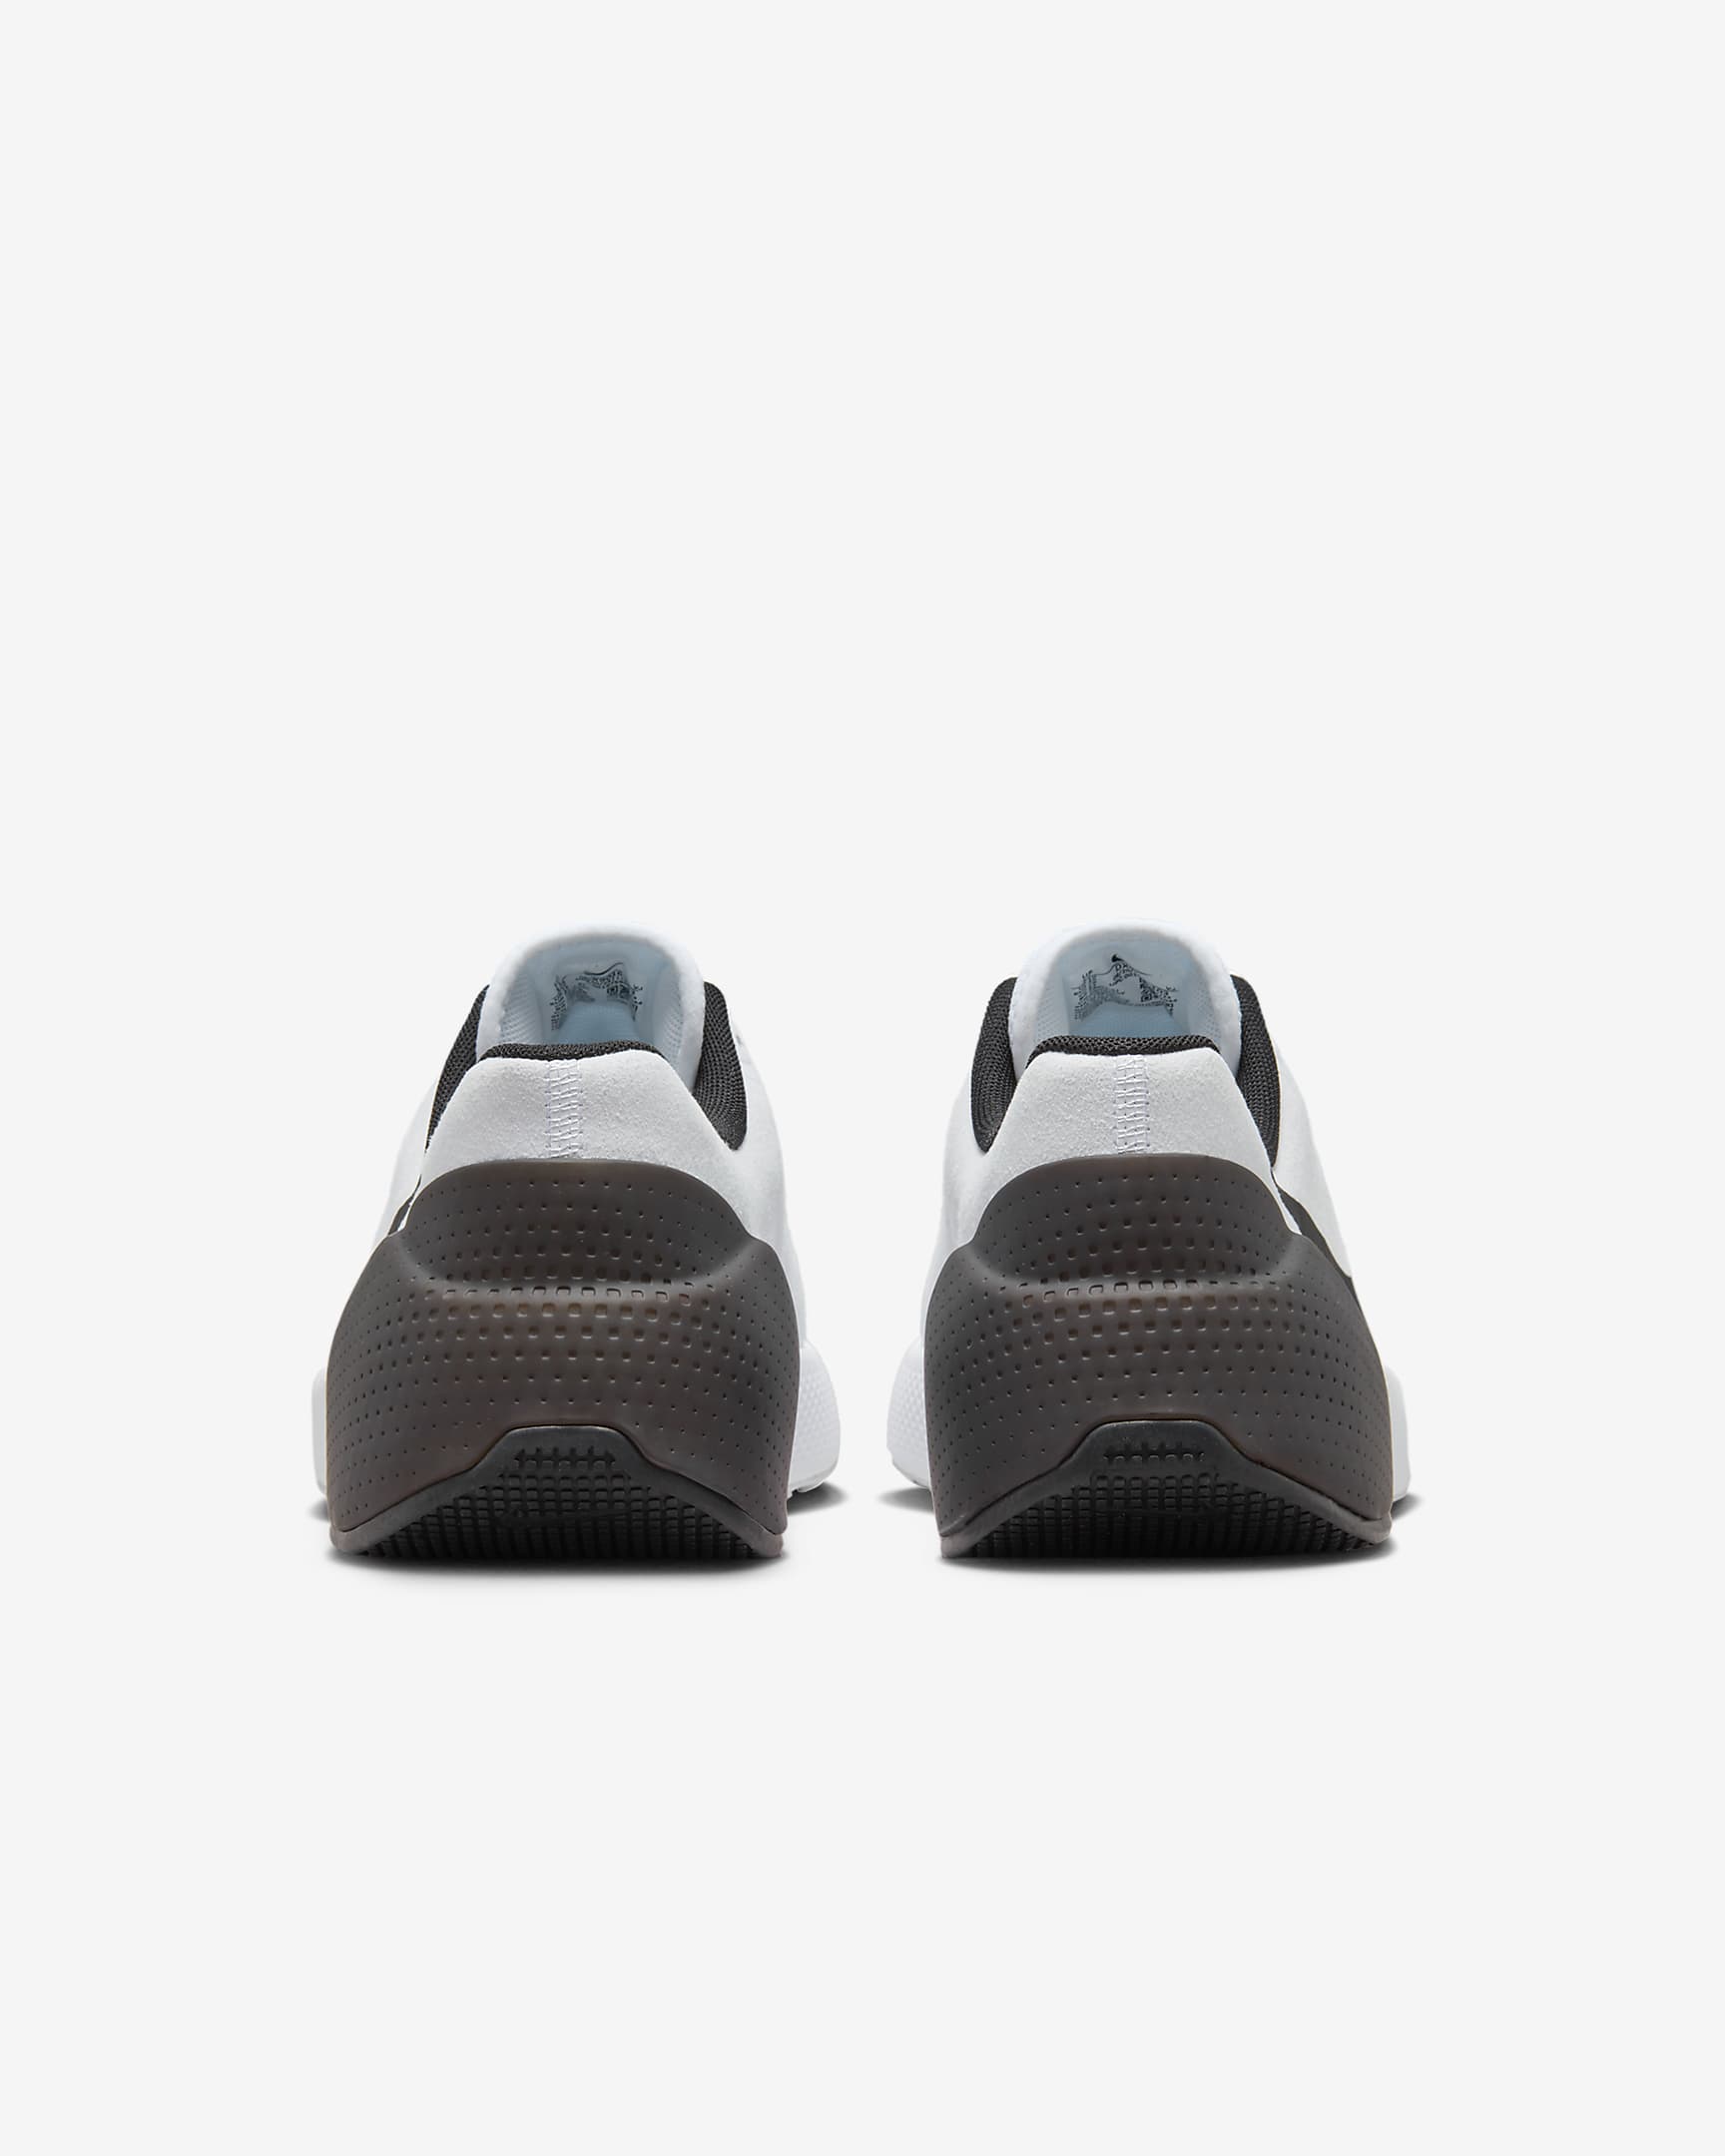 Sapatilhas de treino Nike Air Zoom TR 1 para homem - Branco/Preto